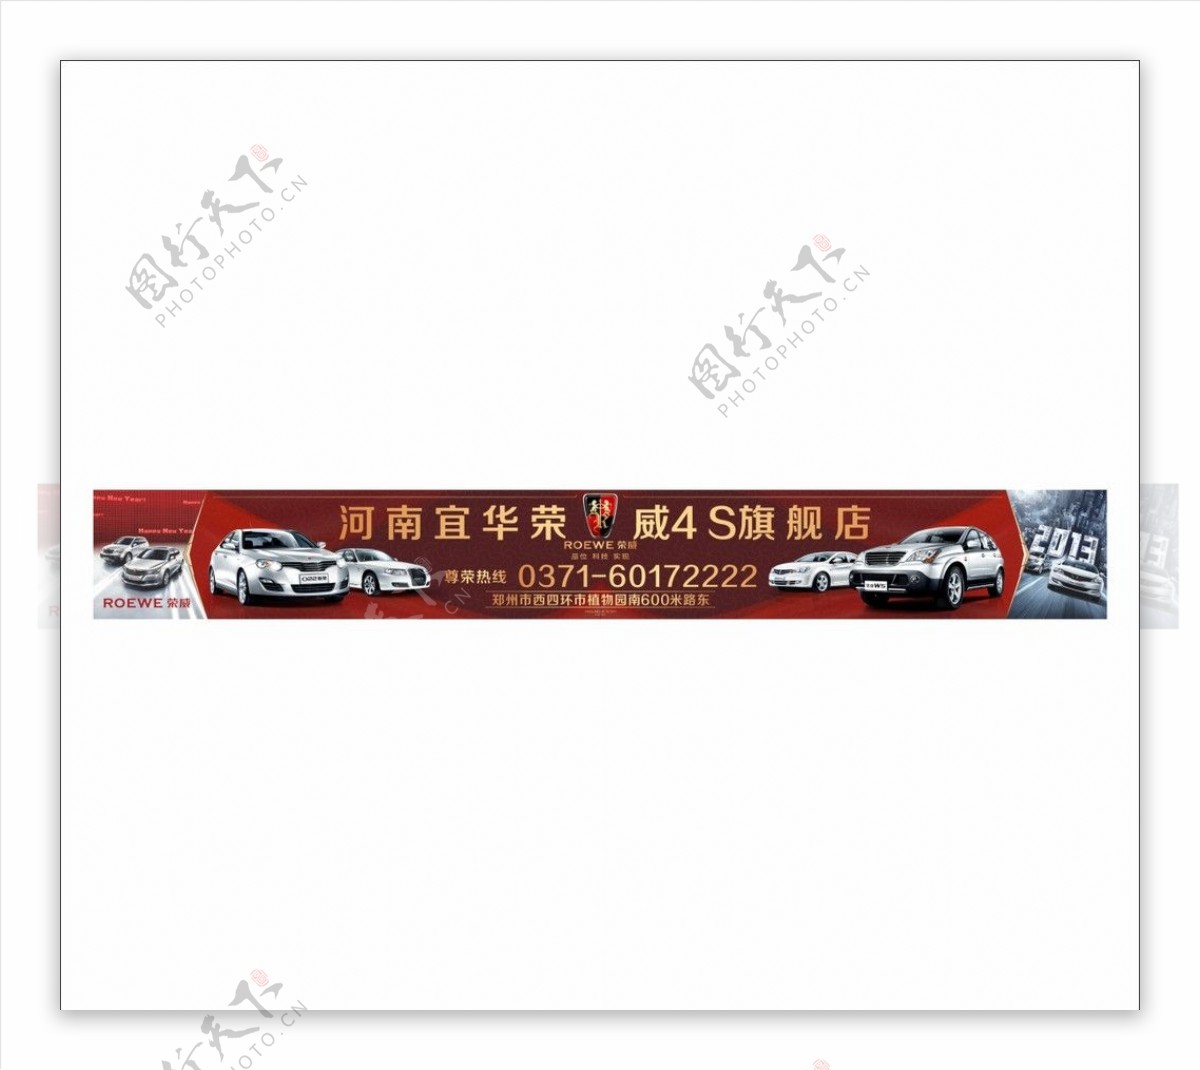 荣威汽车大广告牌图片